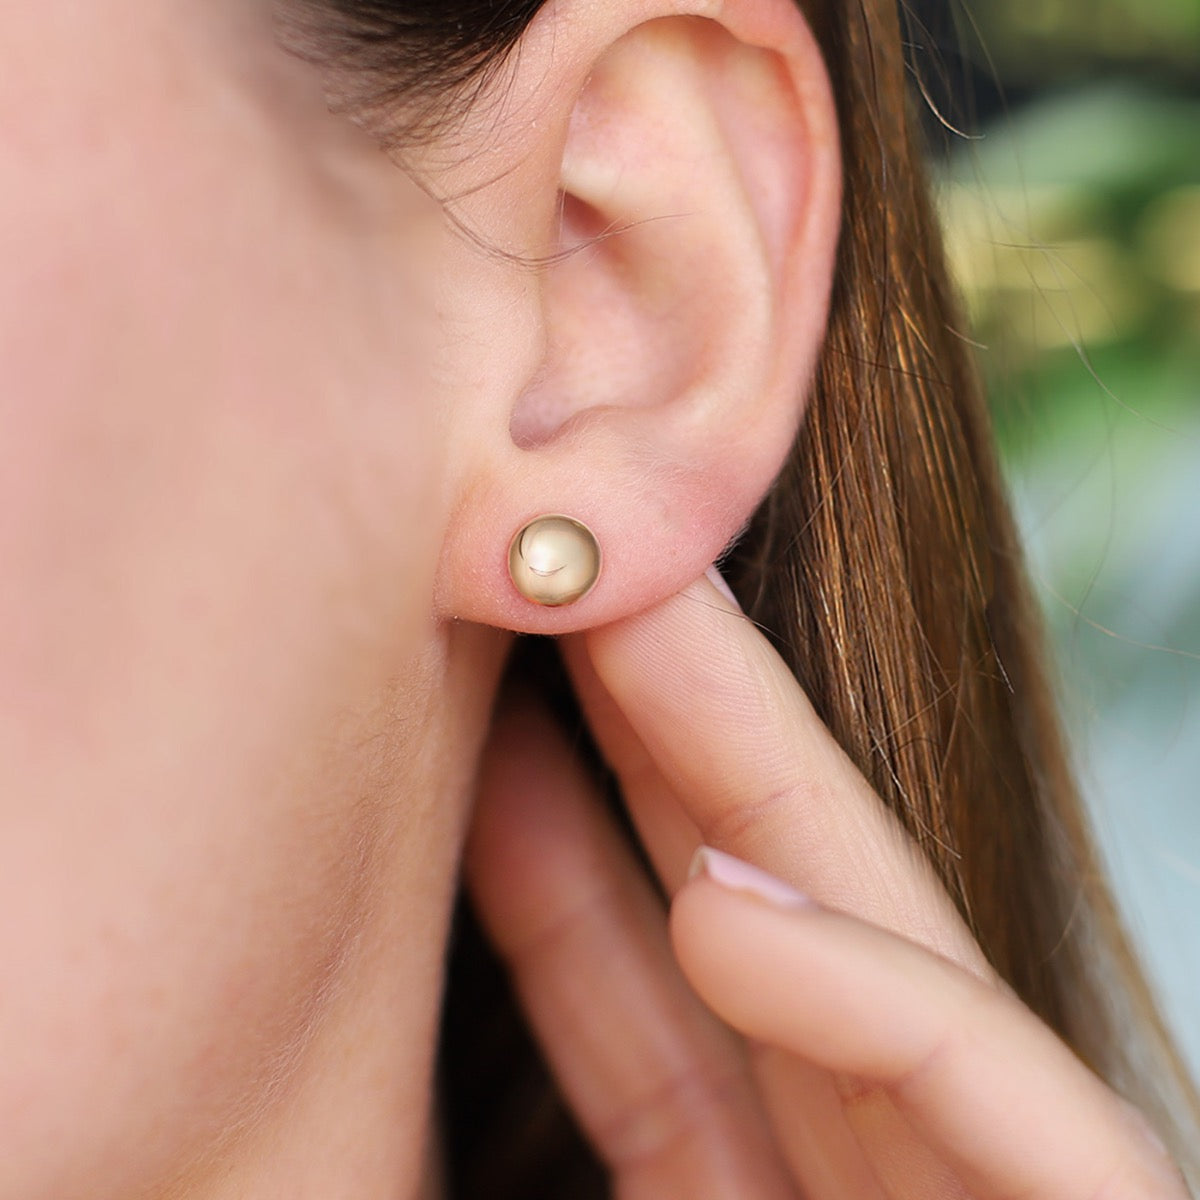 Women's Earrings - Designer Gold Studs